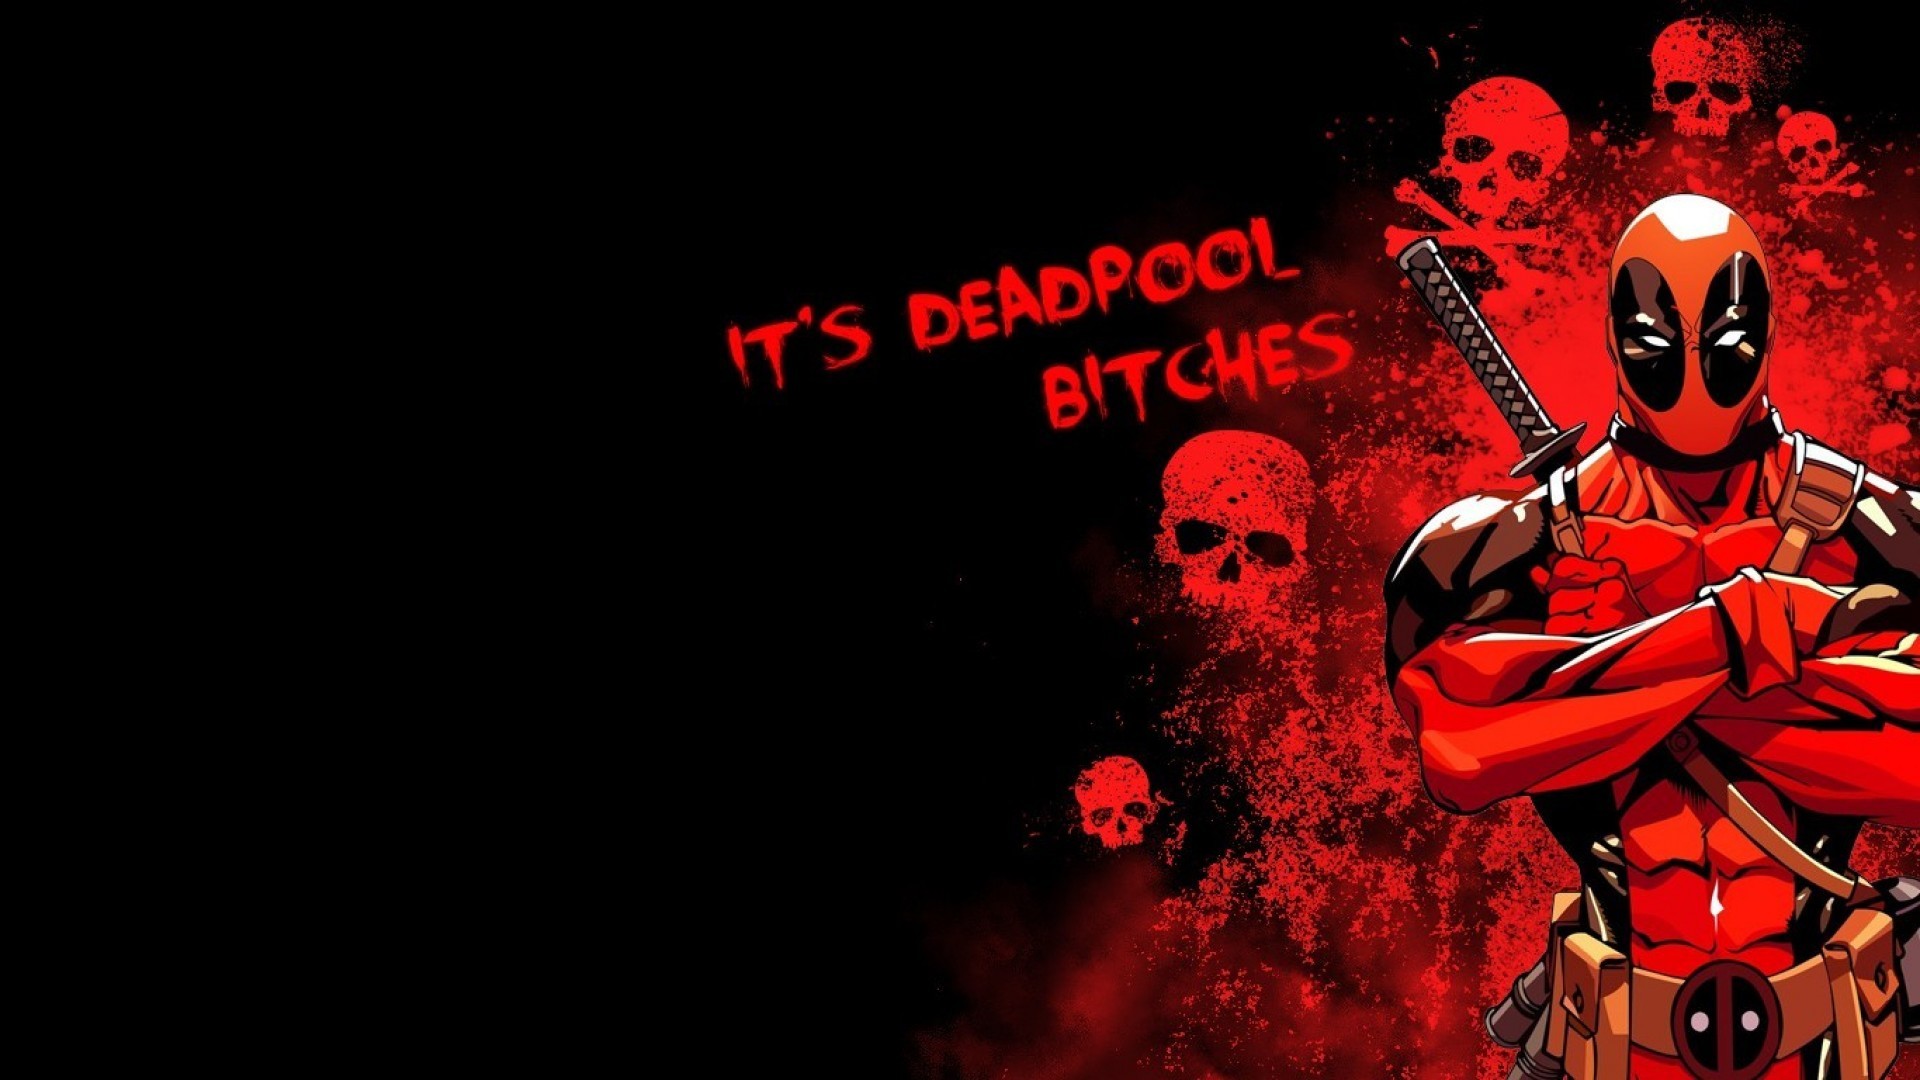 1920x1080 deadpool wallpaper  hd - Google Search | Deadpool Wallpapers |  Pinterest | Deadpool wallpaper and Deadpool